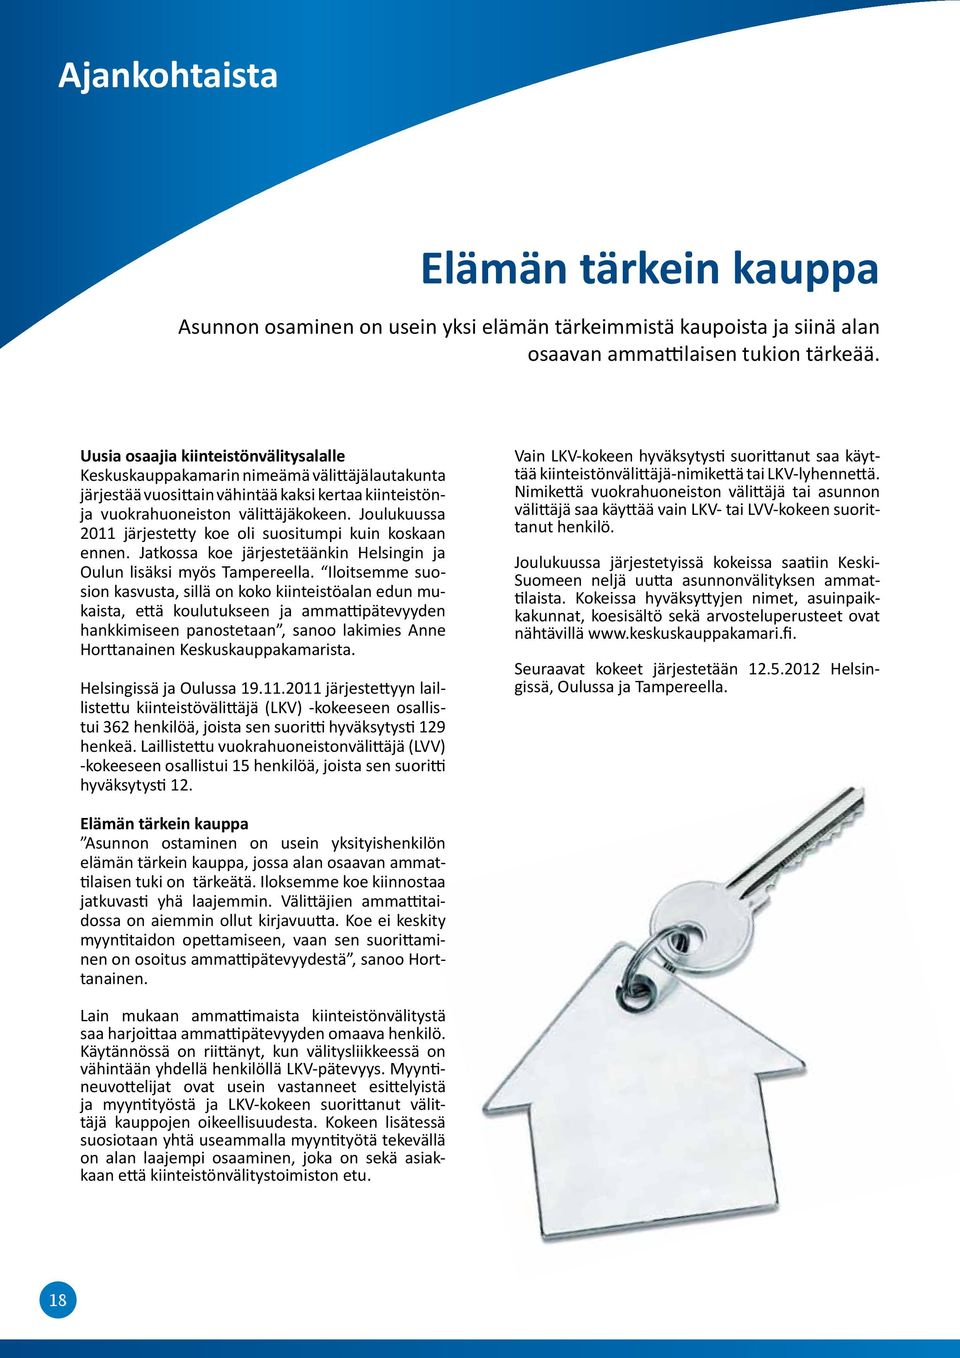 Joulukuussa 2011 järjes tetty koe oli suositumpi kuin koskaan ennen. Jatkossa koe järjestetäänkin Helsingin ja Oulun lisäksi myös Tampereella.